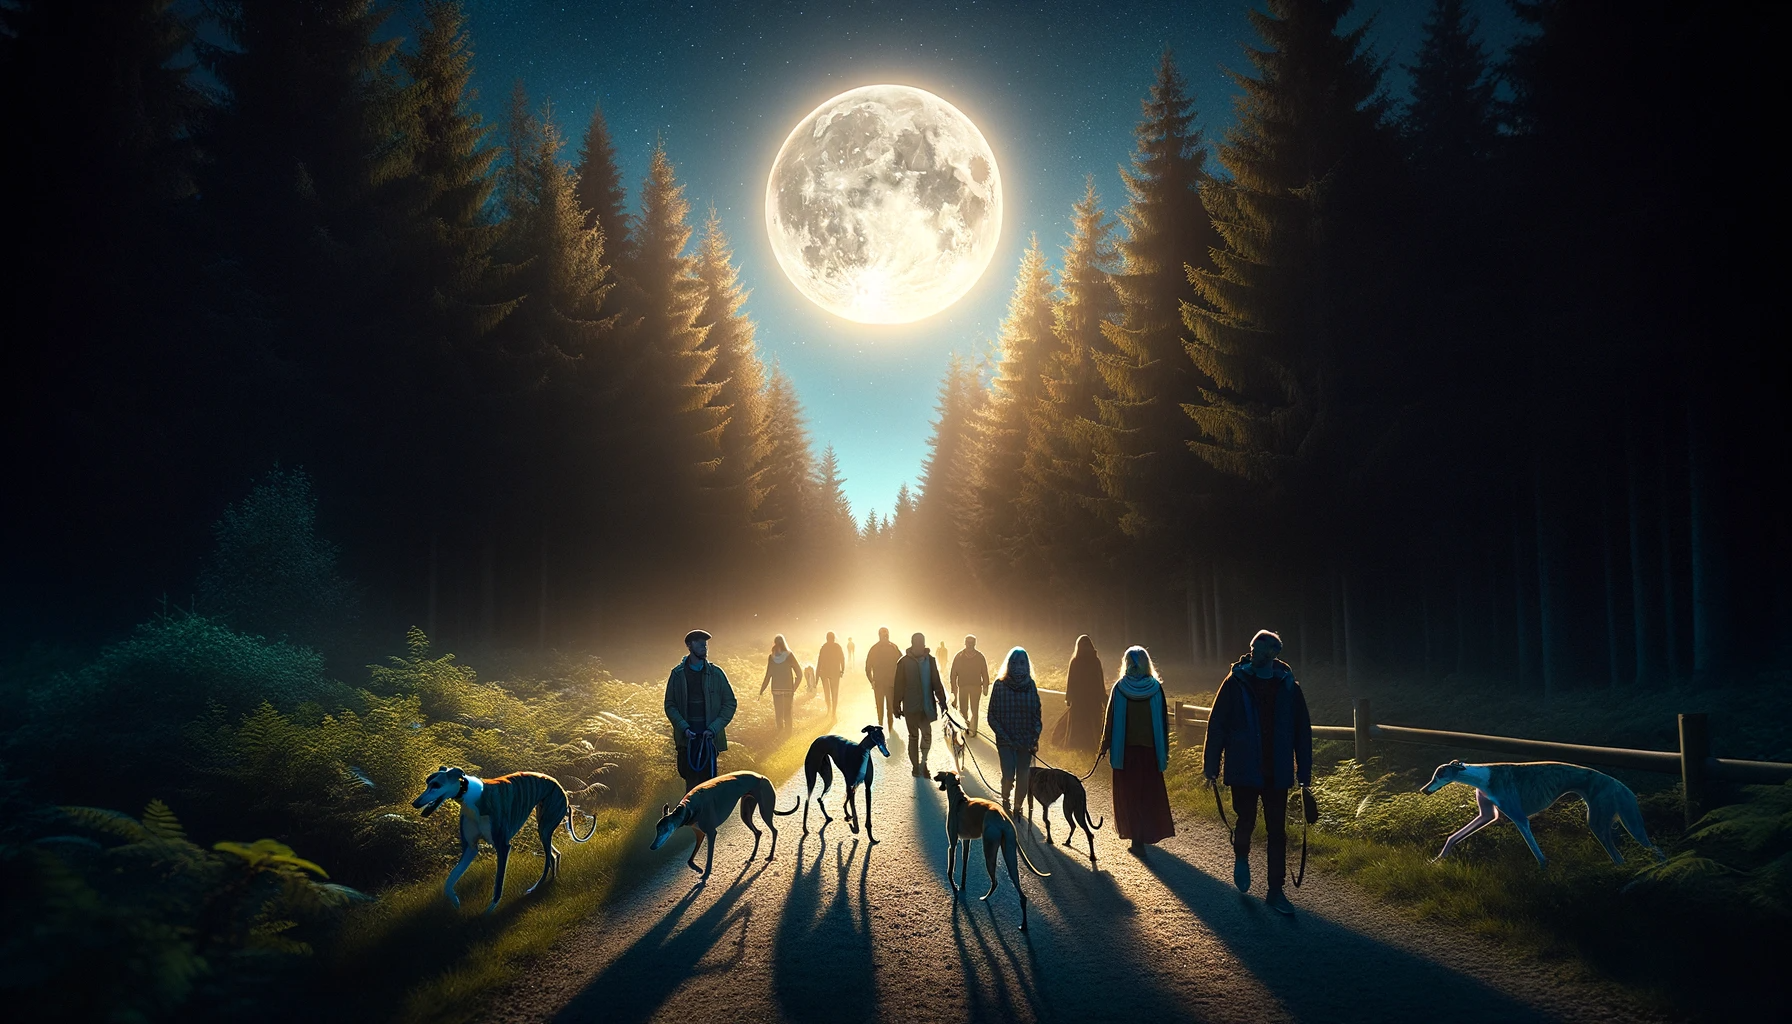 Eine ruhige und magische Szene einer Gruppe von Menschen mit verschiedenen Windhundrassen, darunter Windhunde und Podencos, die unter einem hellen, vollen Mond spazieren gehen.